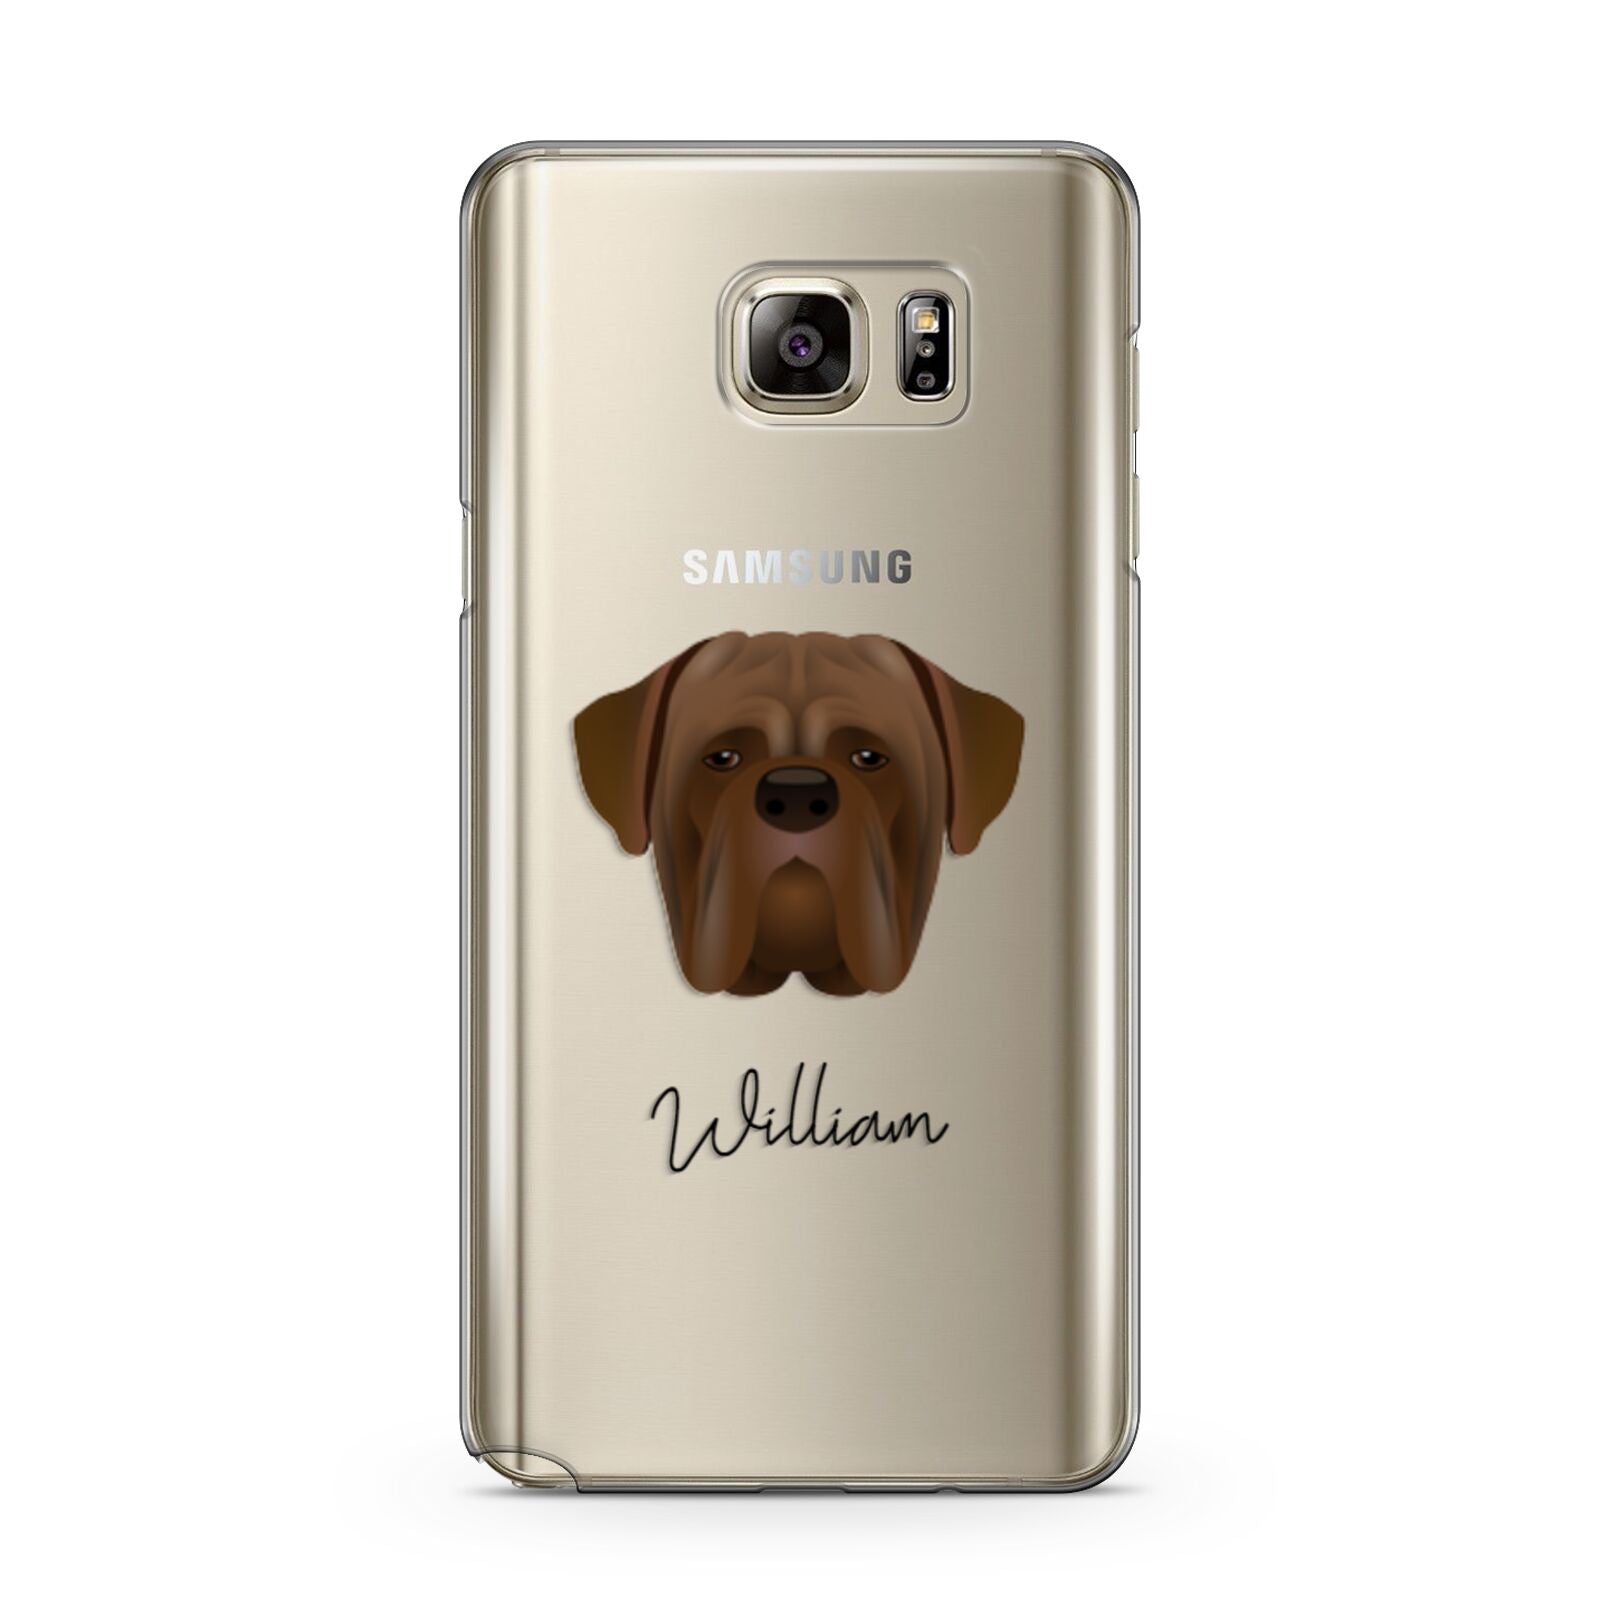 Dogue de Bordeaux Personalised Samsung Galaxy Note 5 Case